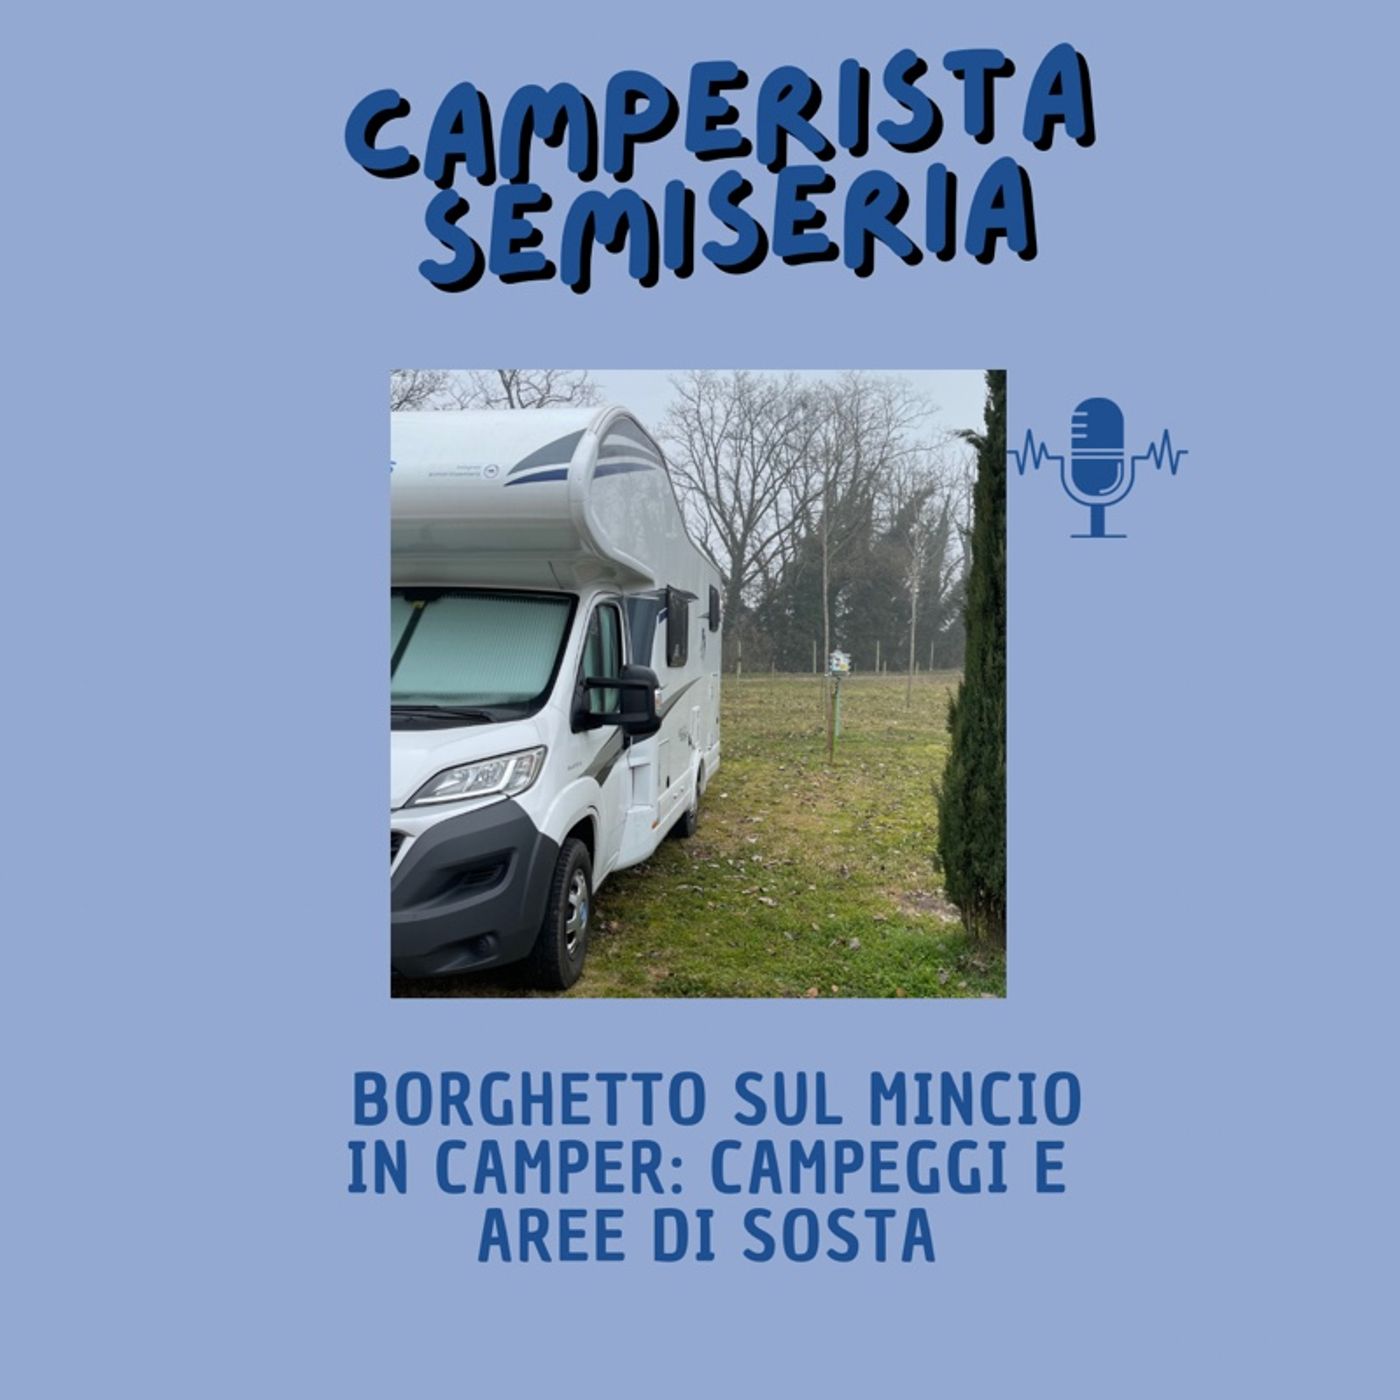 Borghetto sul Mincio in camper: campeggi e aree di sosta - Camperistasemiseria